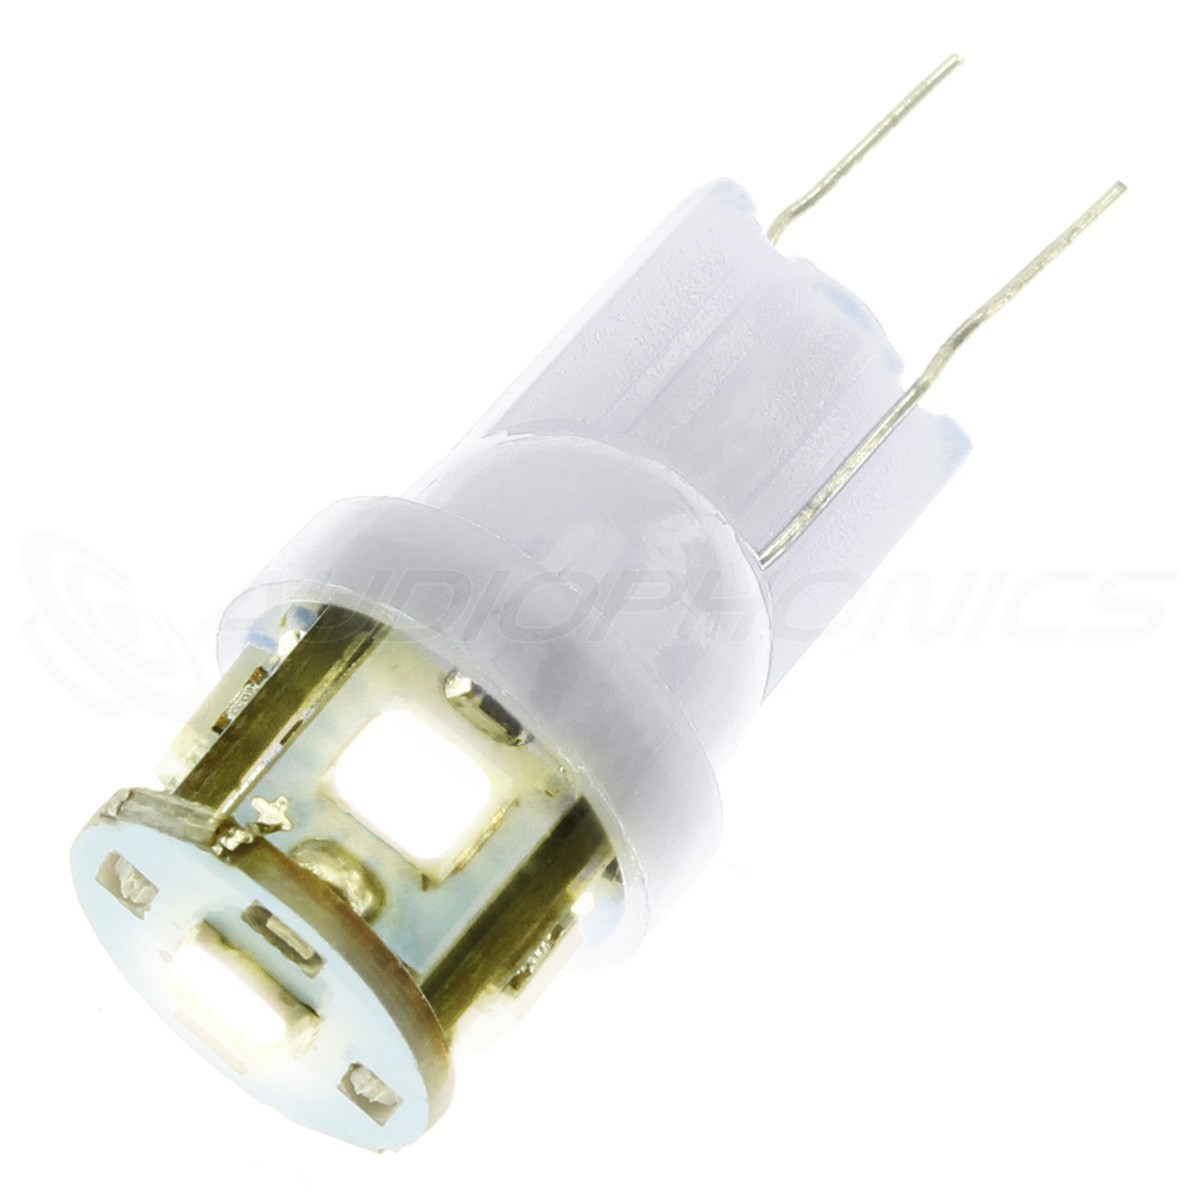 Ampoules H4 LED 20W blanc - Next-Tech®